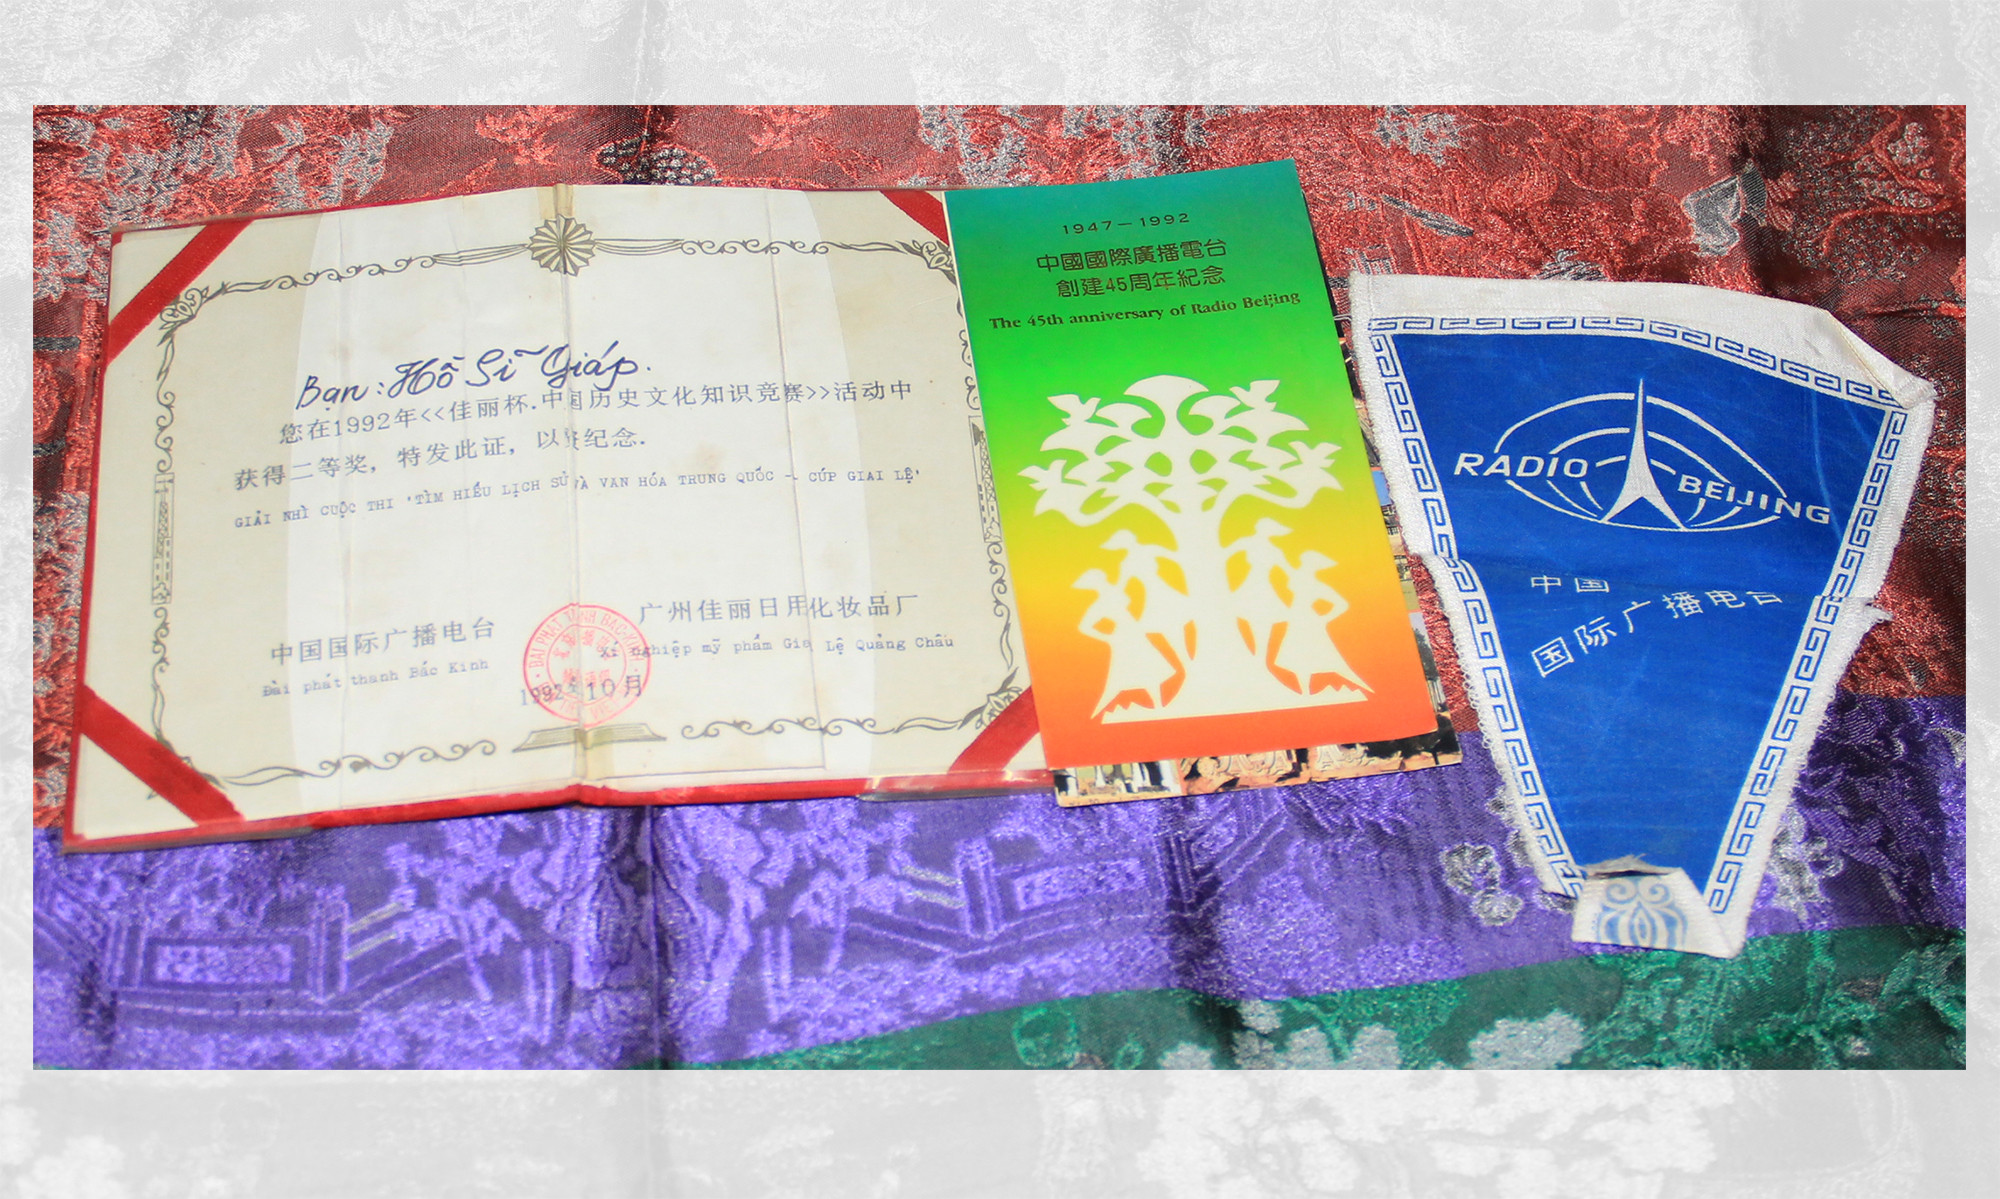 Giấy chứng nhận đạt giải Nhì cuộc thi Tìm hiểu về lịch sử và văn hóa Trung Quốc do Đài Phát thanh Bắc Kinh tổ chức vào năm 1991 được gửi về từ Bắc Kinh của ông Giáp.